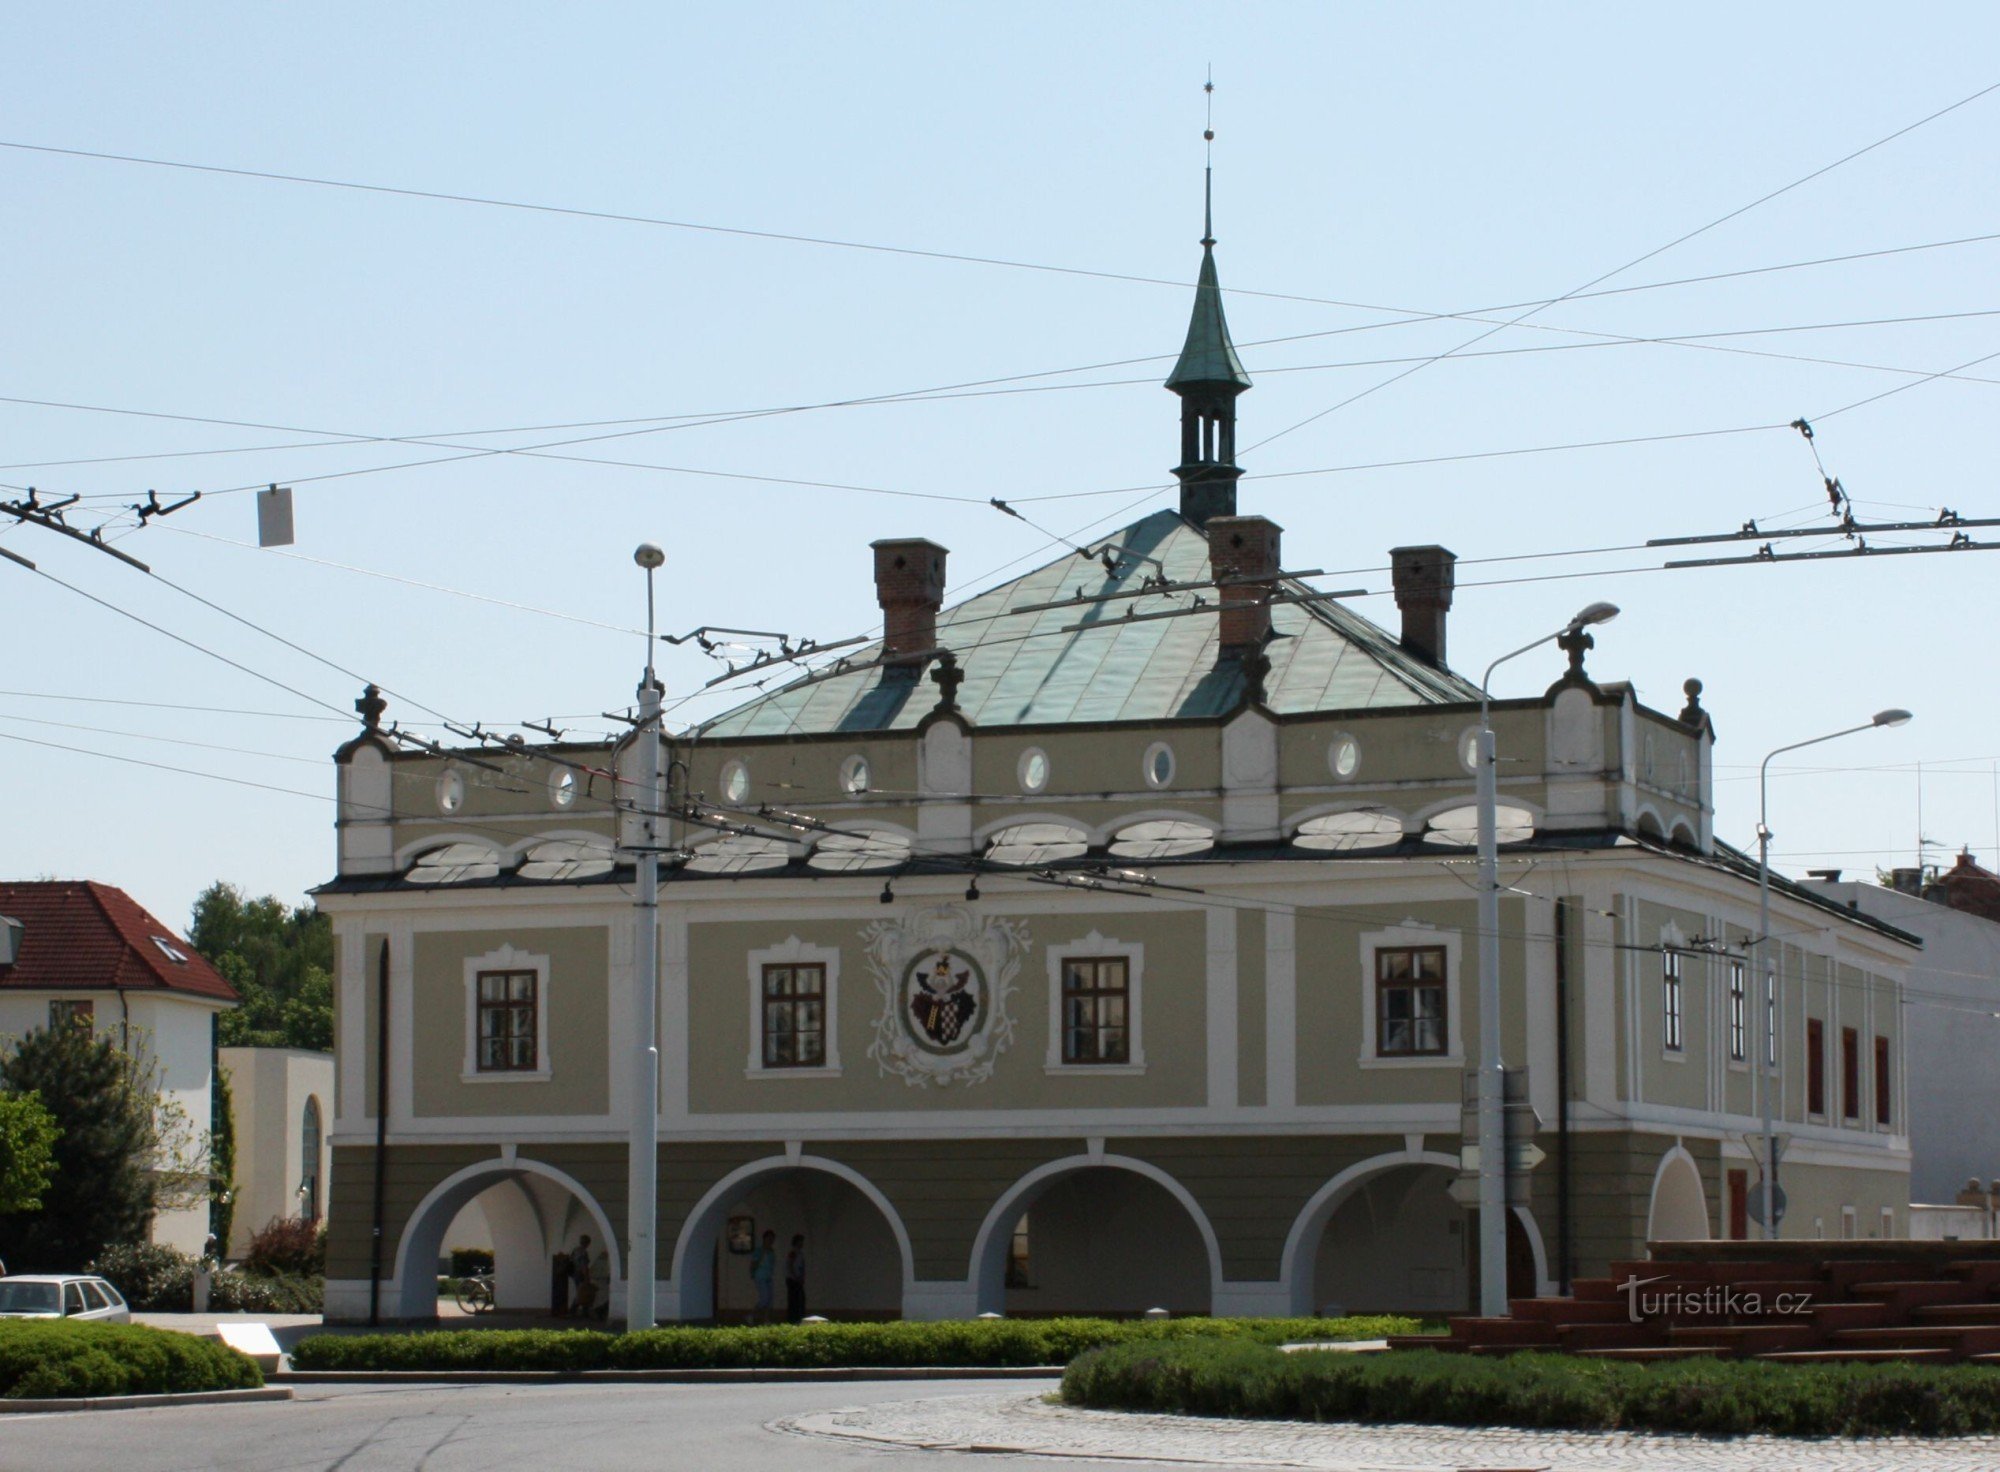 Spa Bohdaneč - Rådhuset